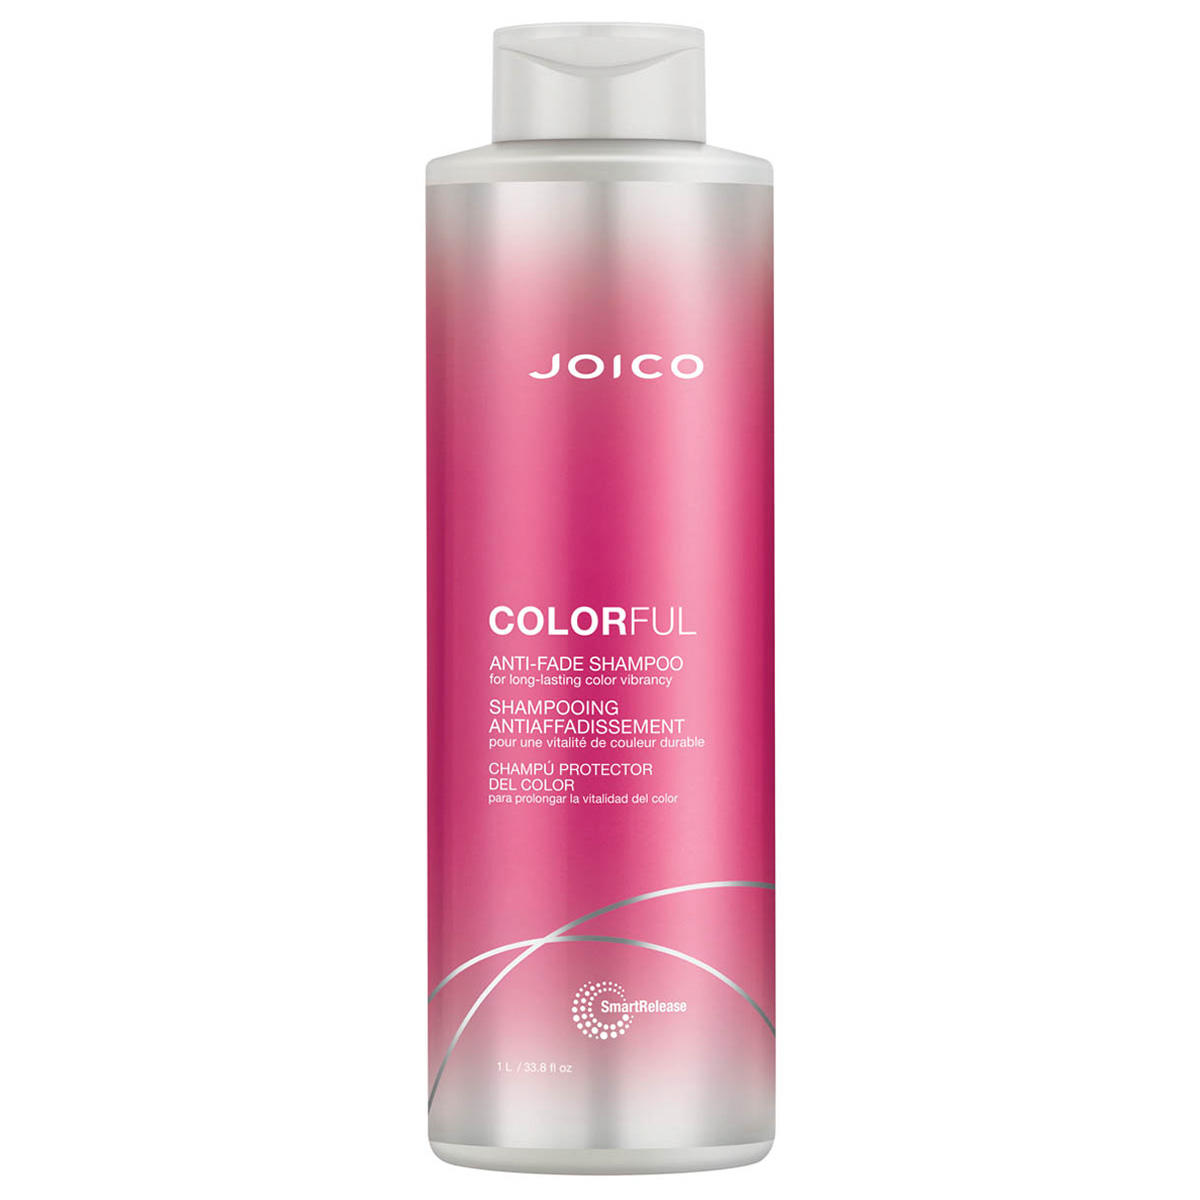 JOICO COLORFUL Anti-Fade Shampoo 1 Liter